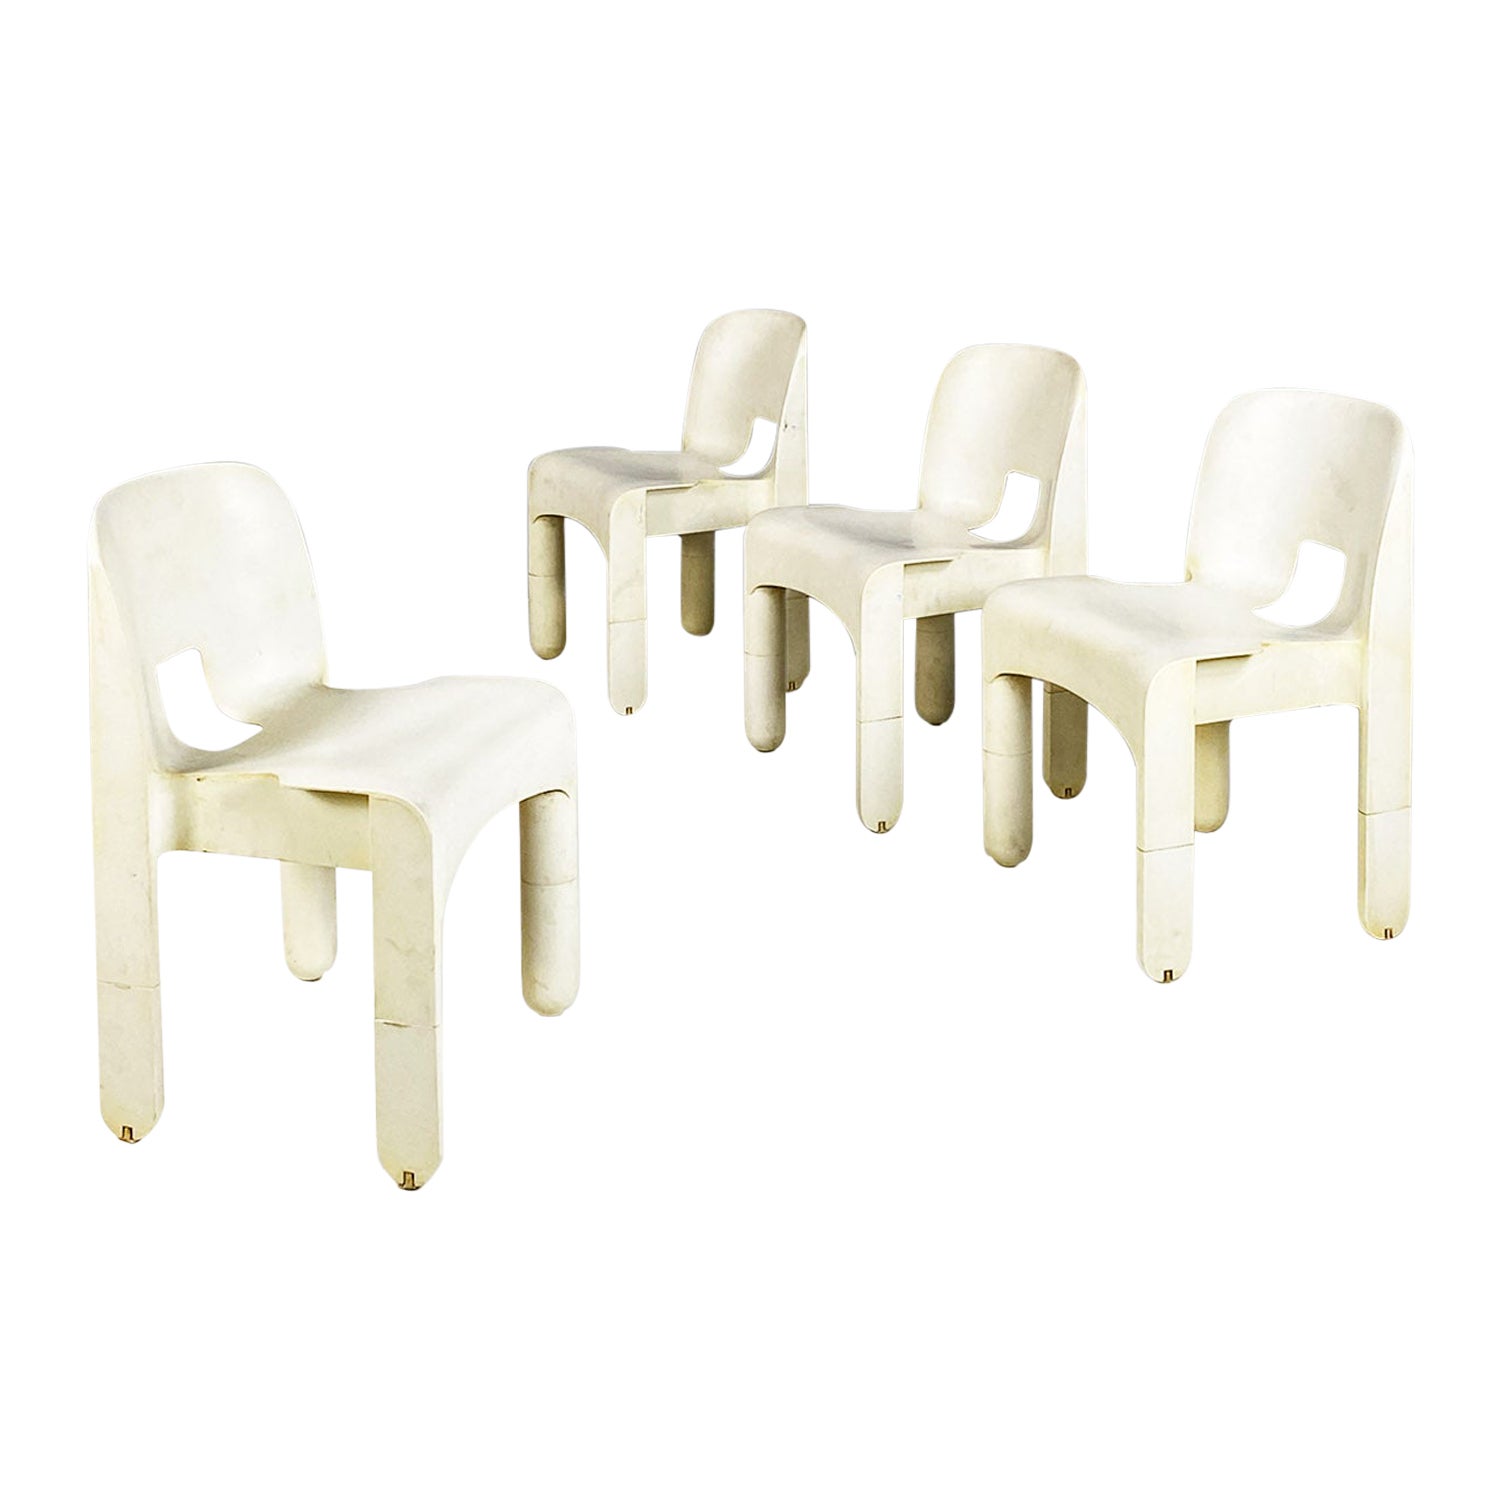 Italienische moderne 860 Universale Stühle aus weißem Kunststoff, Joe Colombo, Kartell, 1970er Jahre